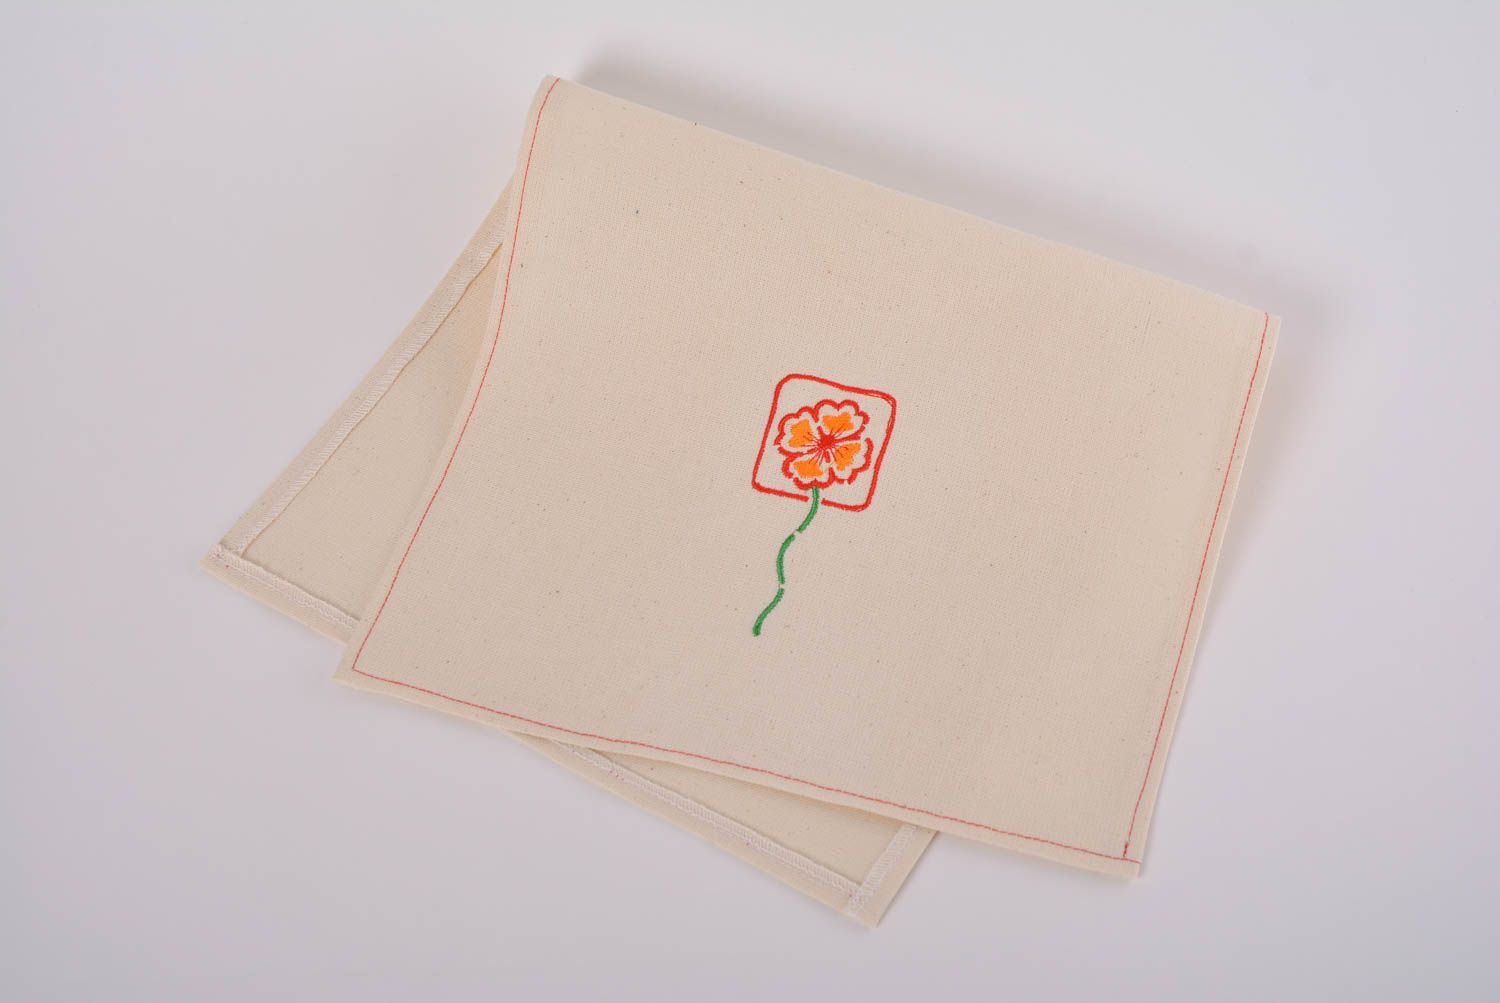 Serviette de table en tissu de mi-lin beige avec broderie de fleur faite main photo 1